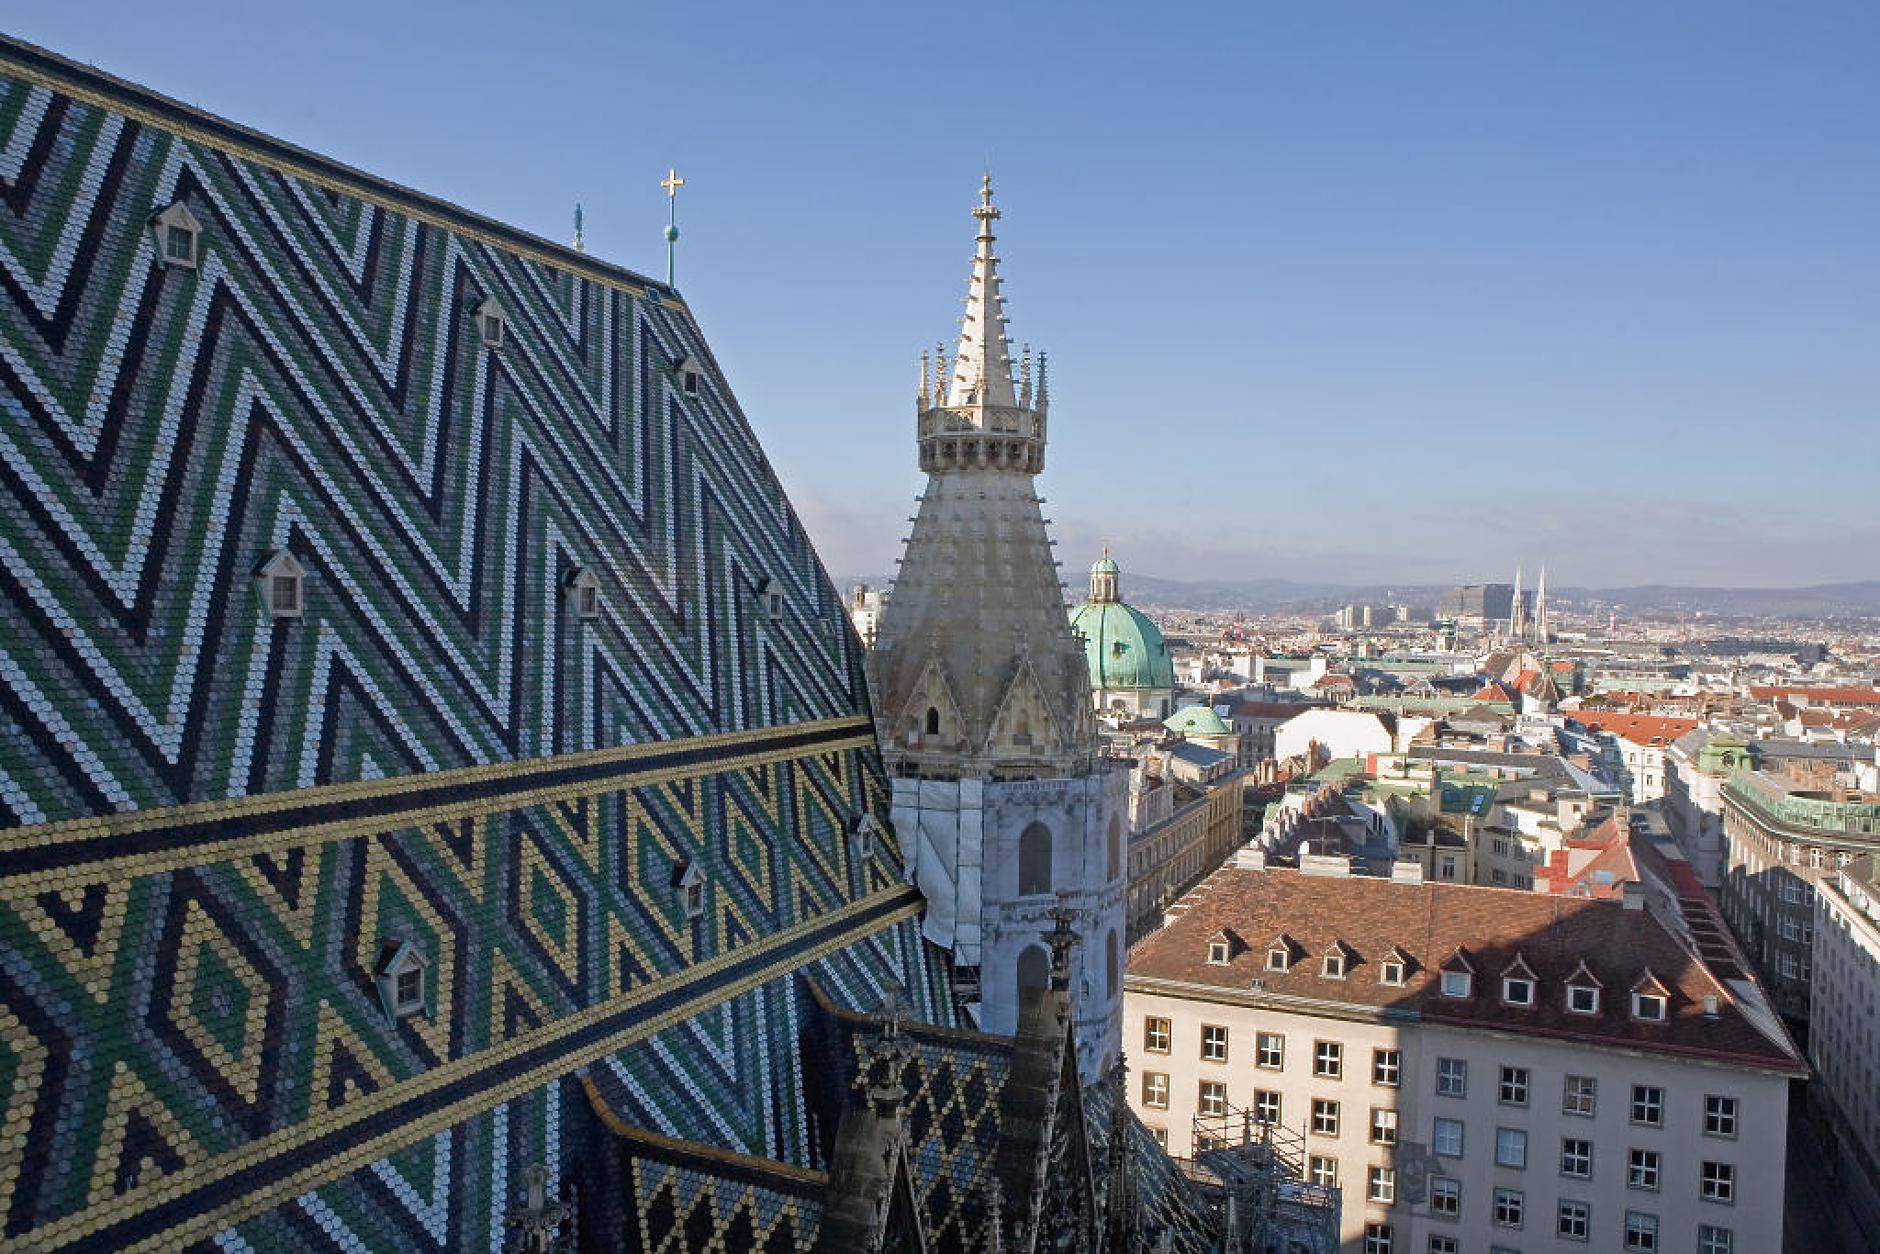 Виена въвежда ограничителни мерки върху отдаване под наем на жилища чрез Airbnb